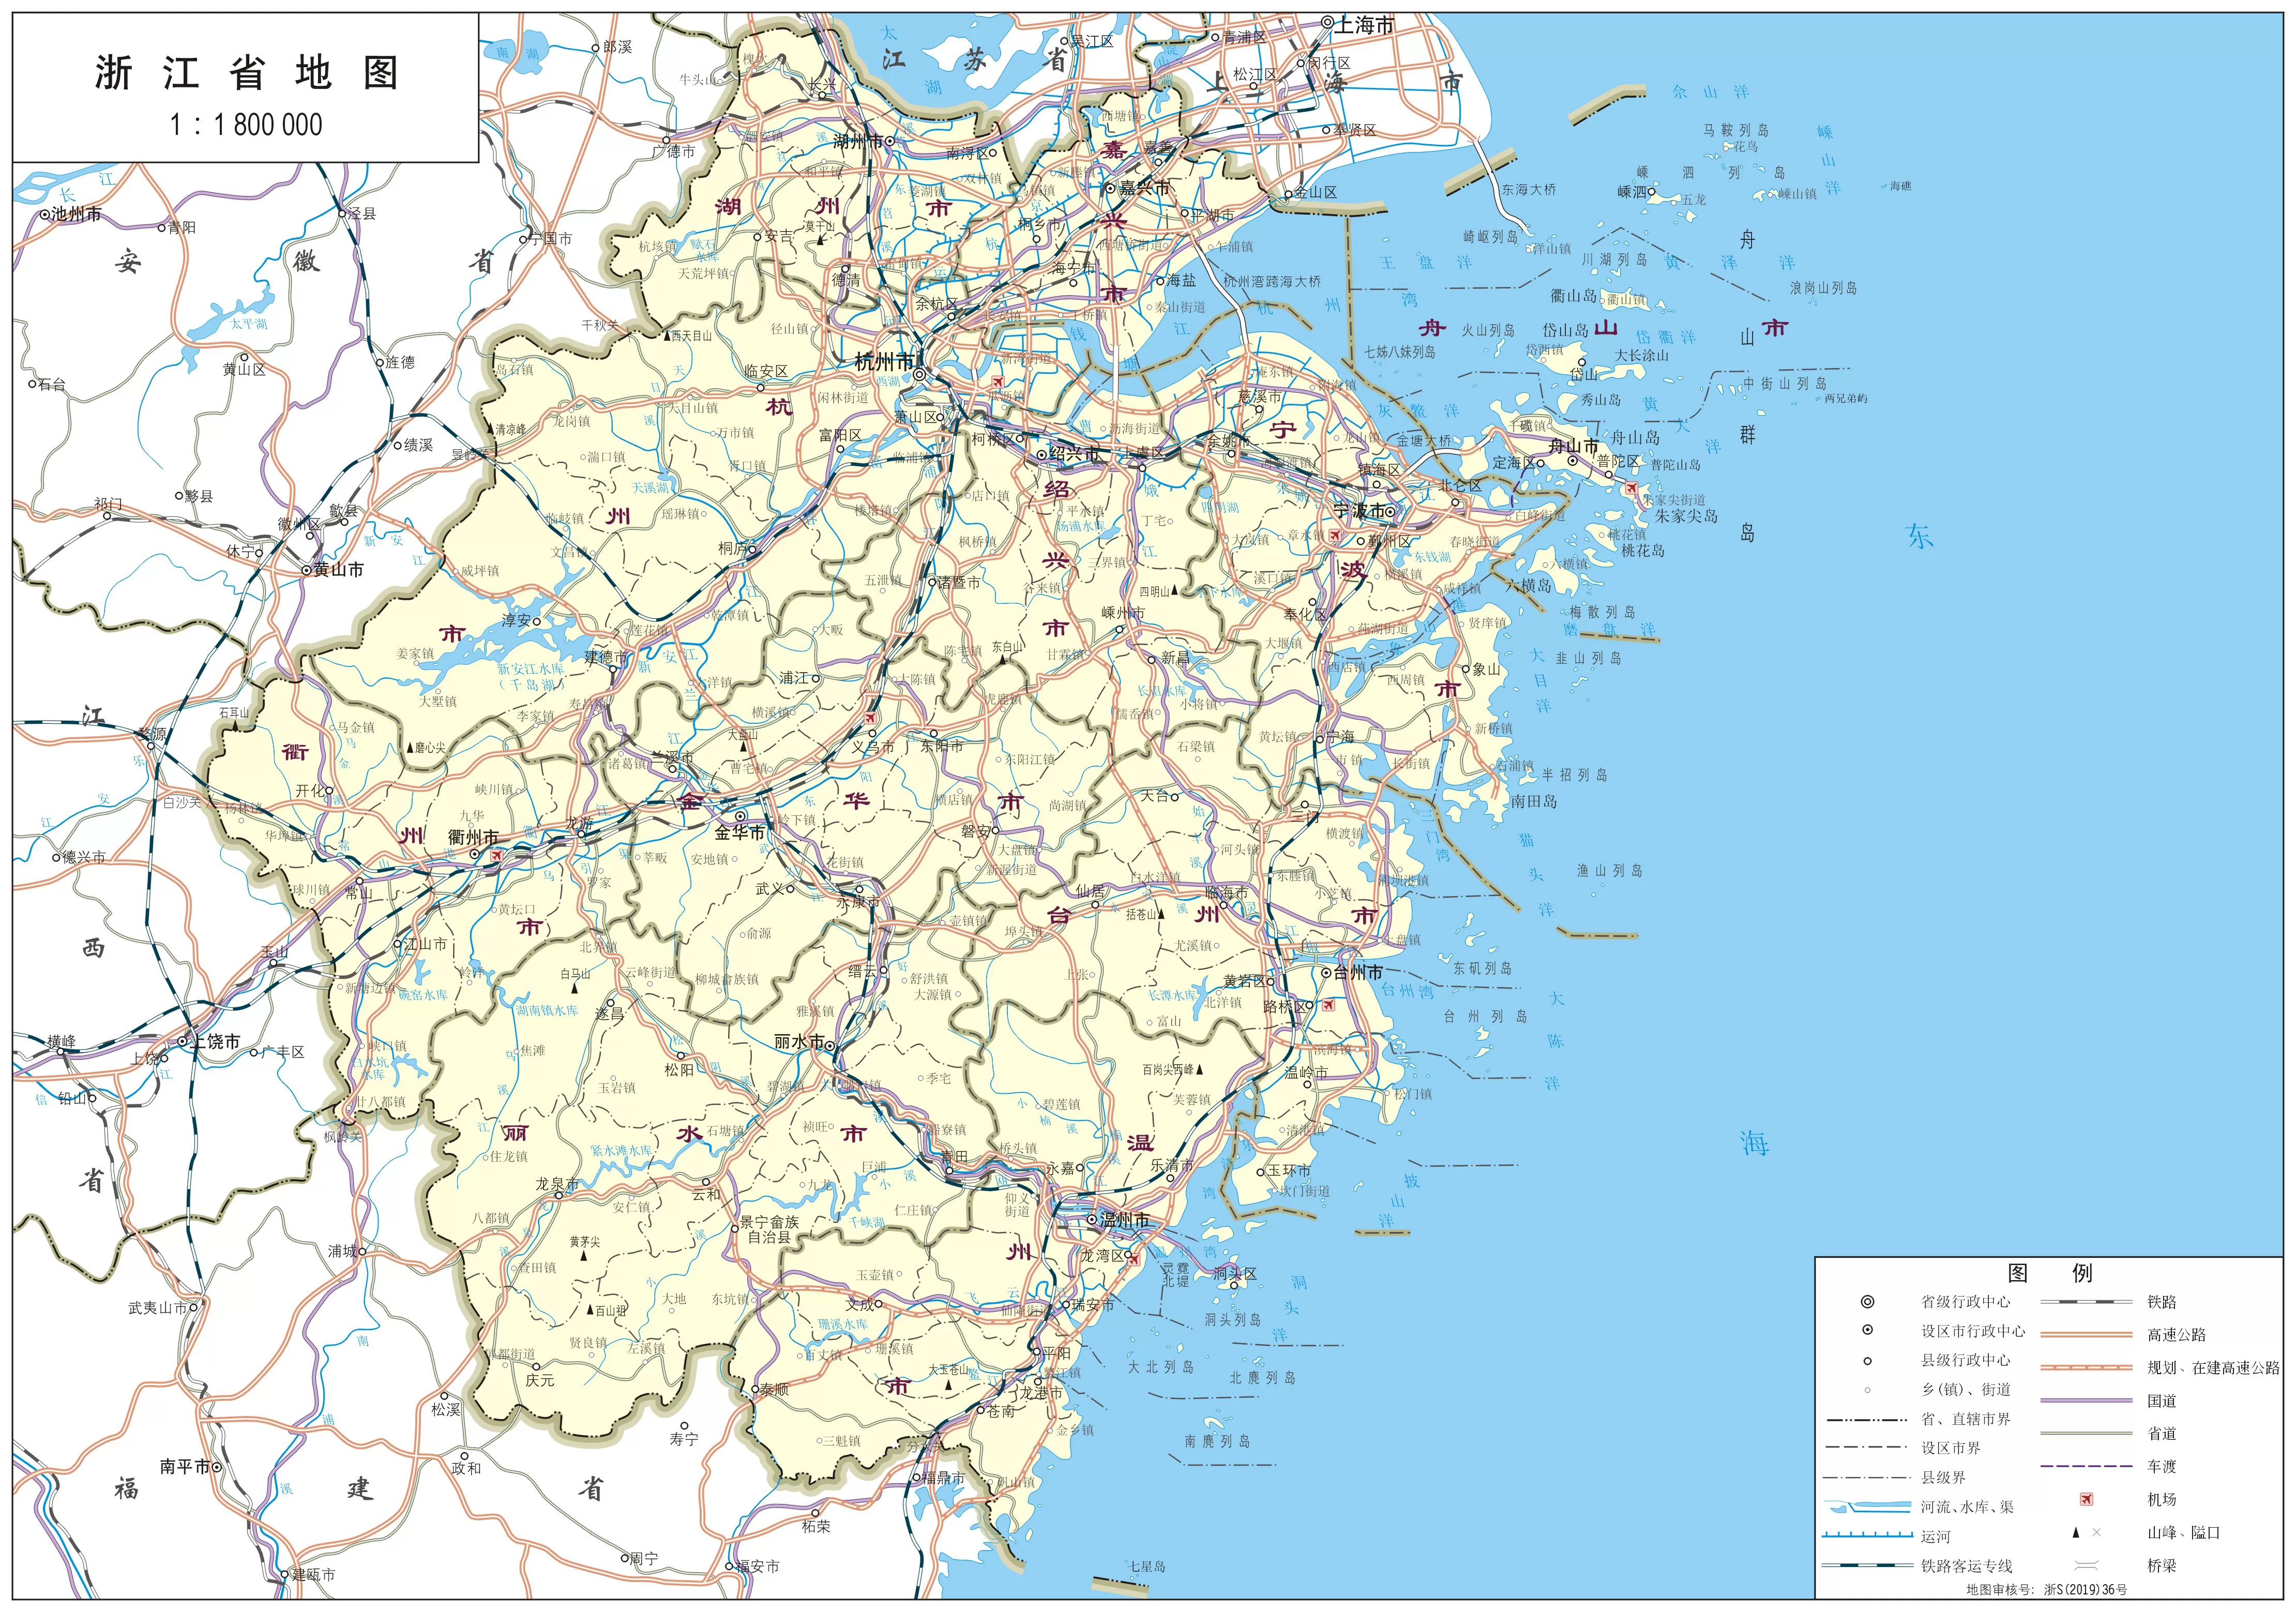 浙江省标准地图1:1800000